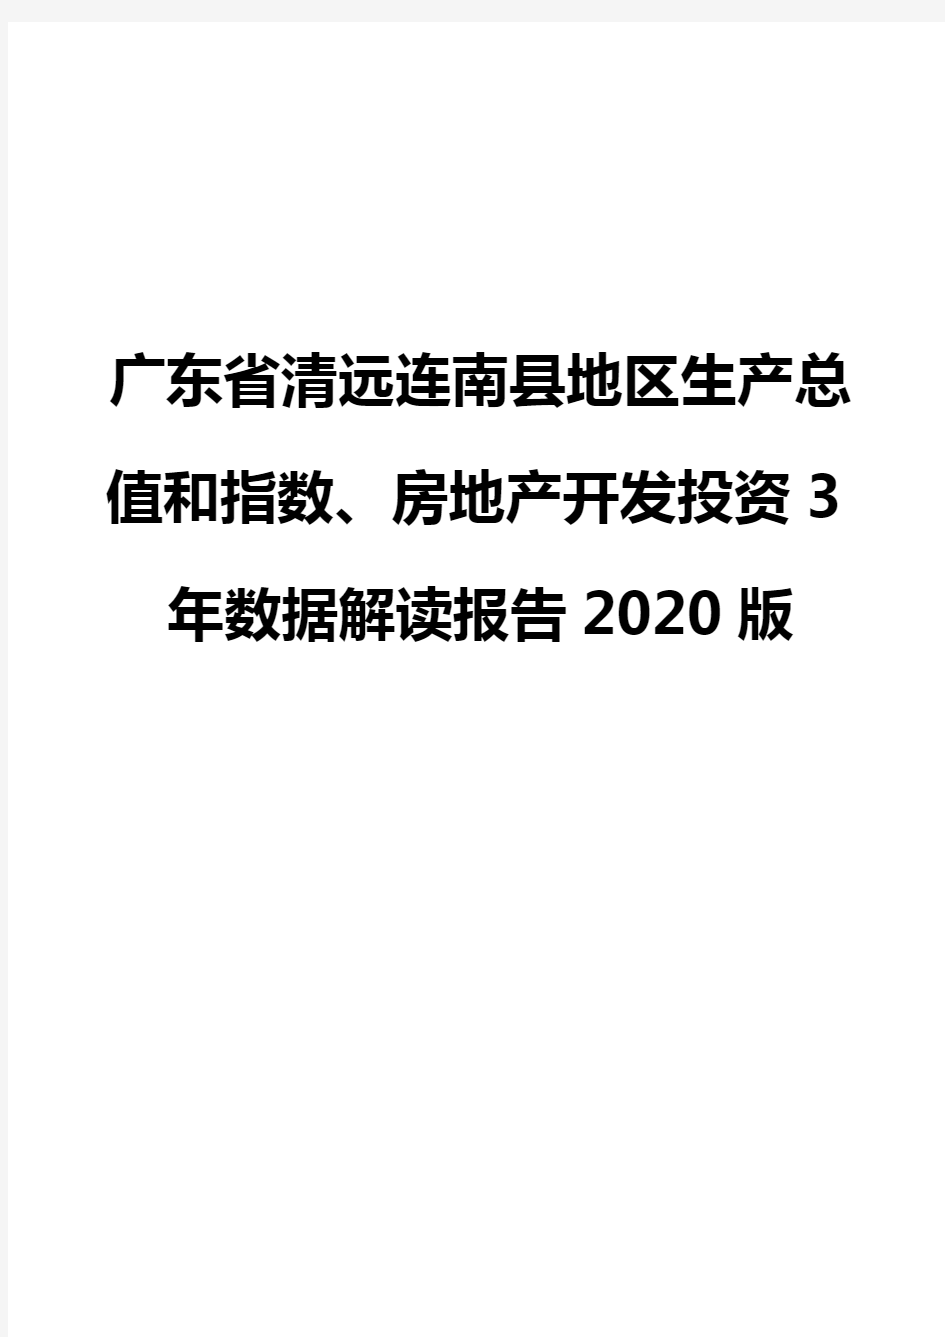 广东省清远连南县地区生产总值和指数、房地产开发投资3年数据解读报告2020版